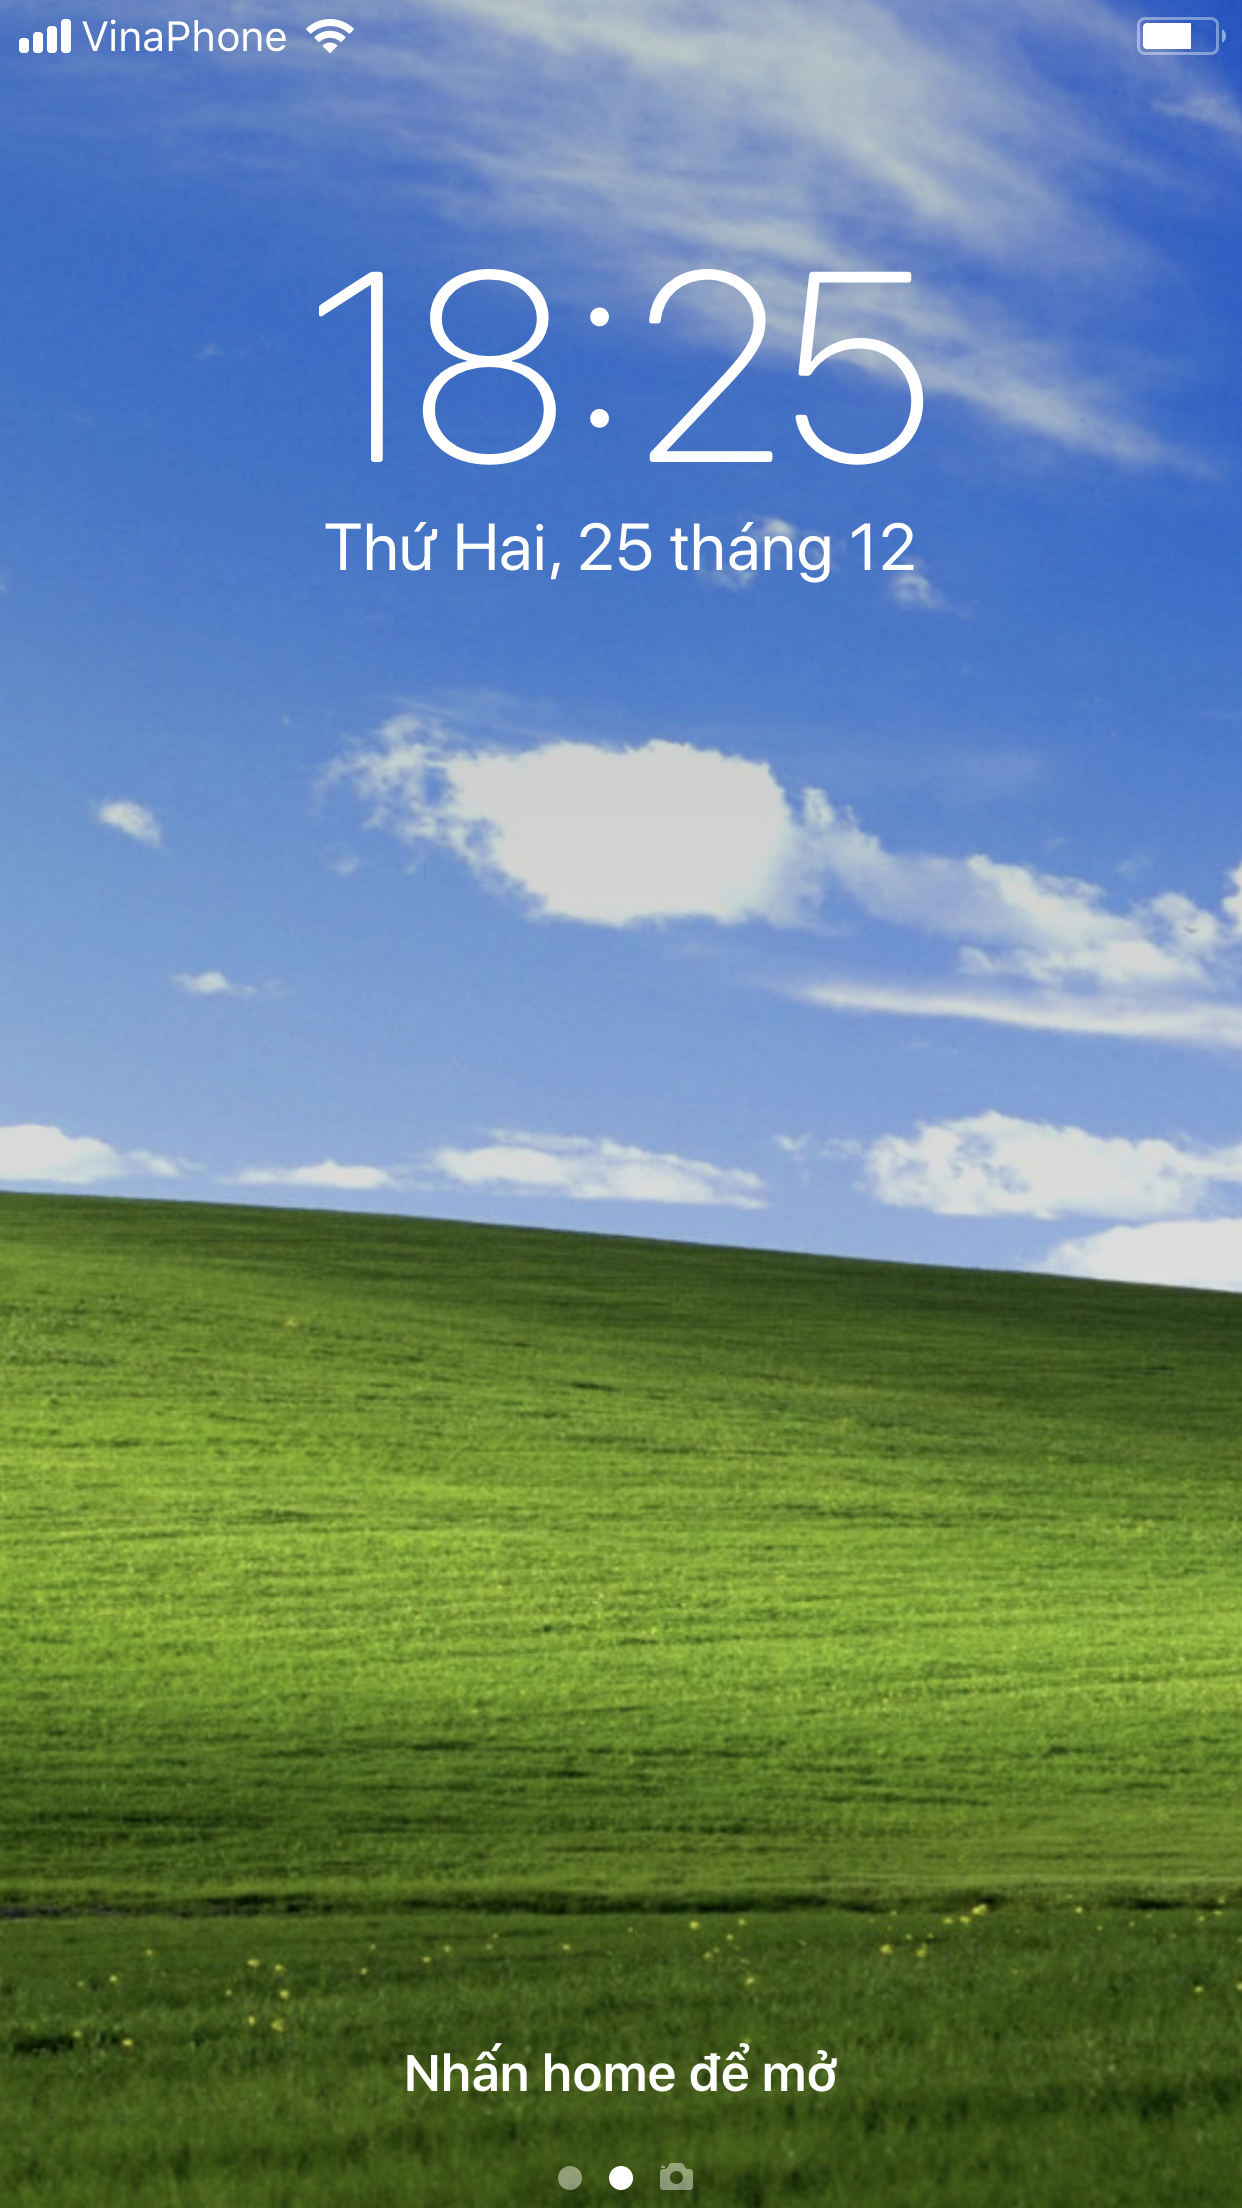 Hình nền Window XP được thiết kế với những đường nét tinh tế và hài hòa, đem lại cho người dùng một cảm giác thư giãn và bình yên hơn. Hãy nhấp chuột để xem các mẫu hình nền đẹp và độc đáo nhất dành cho Window XP.